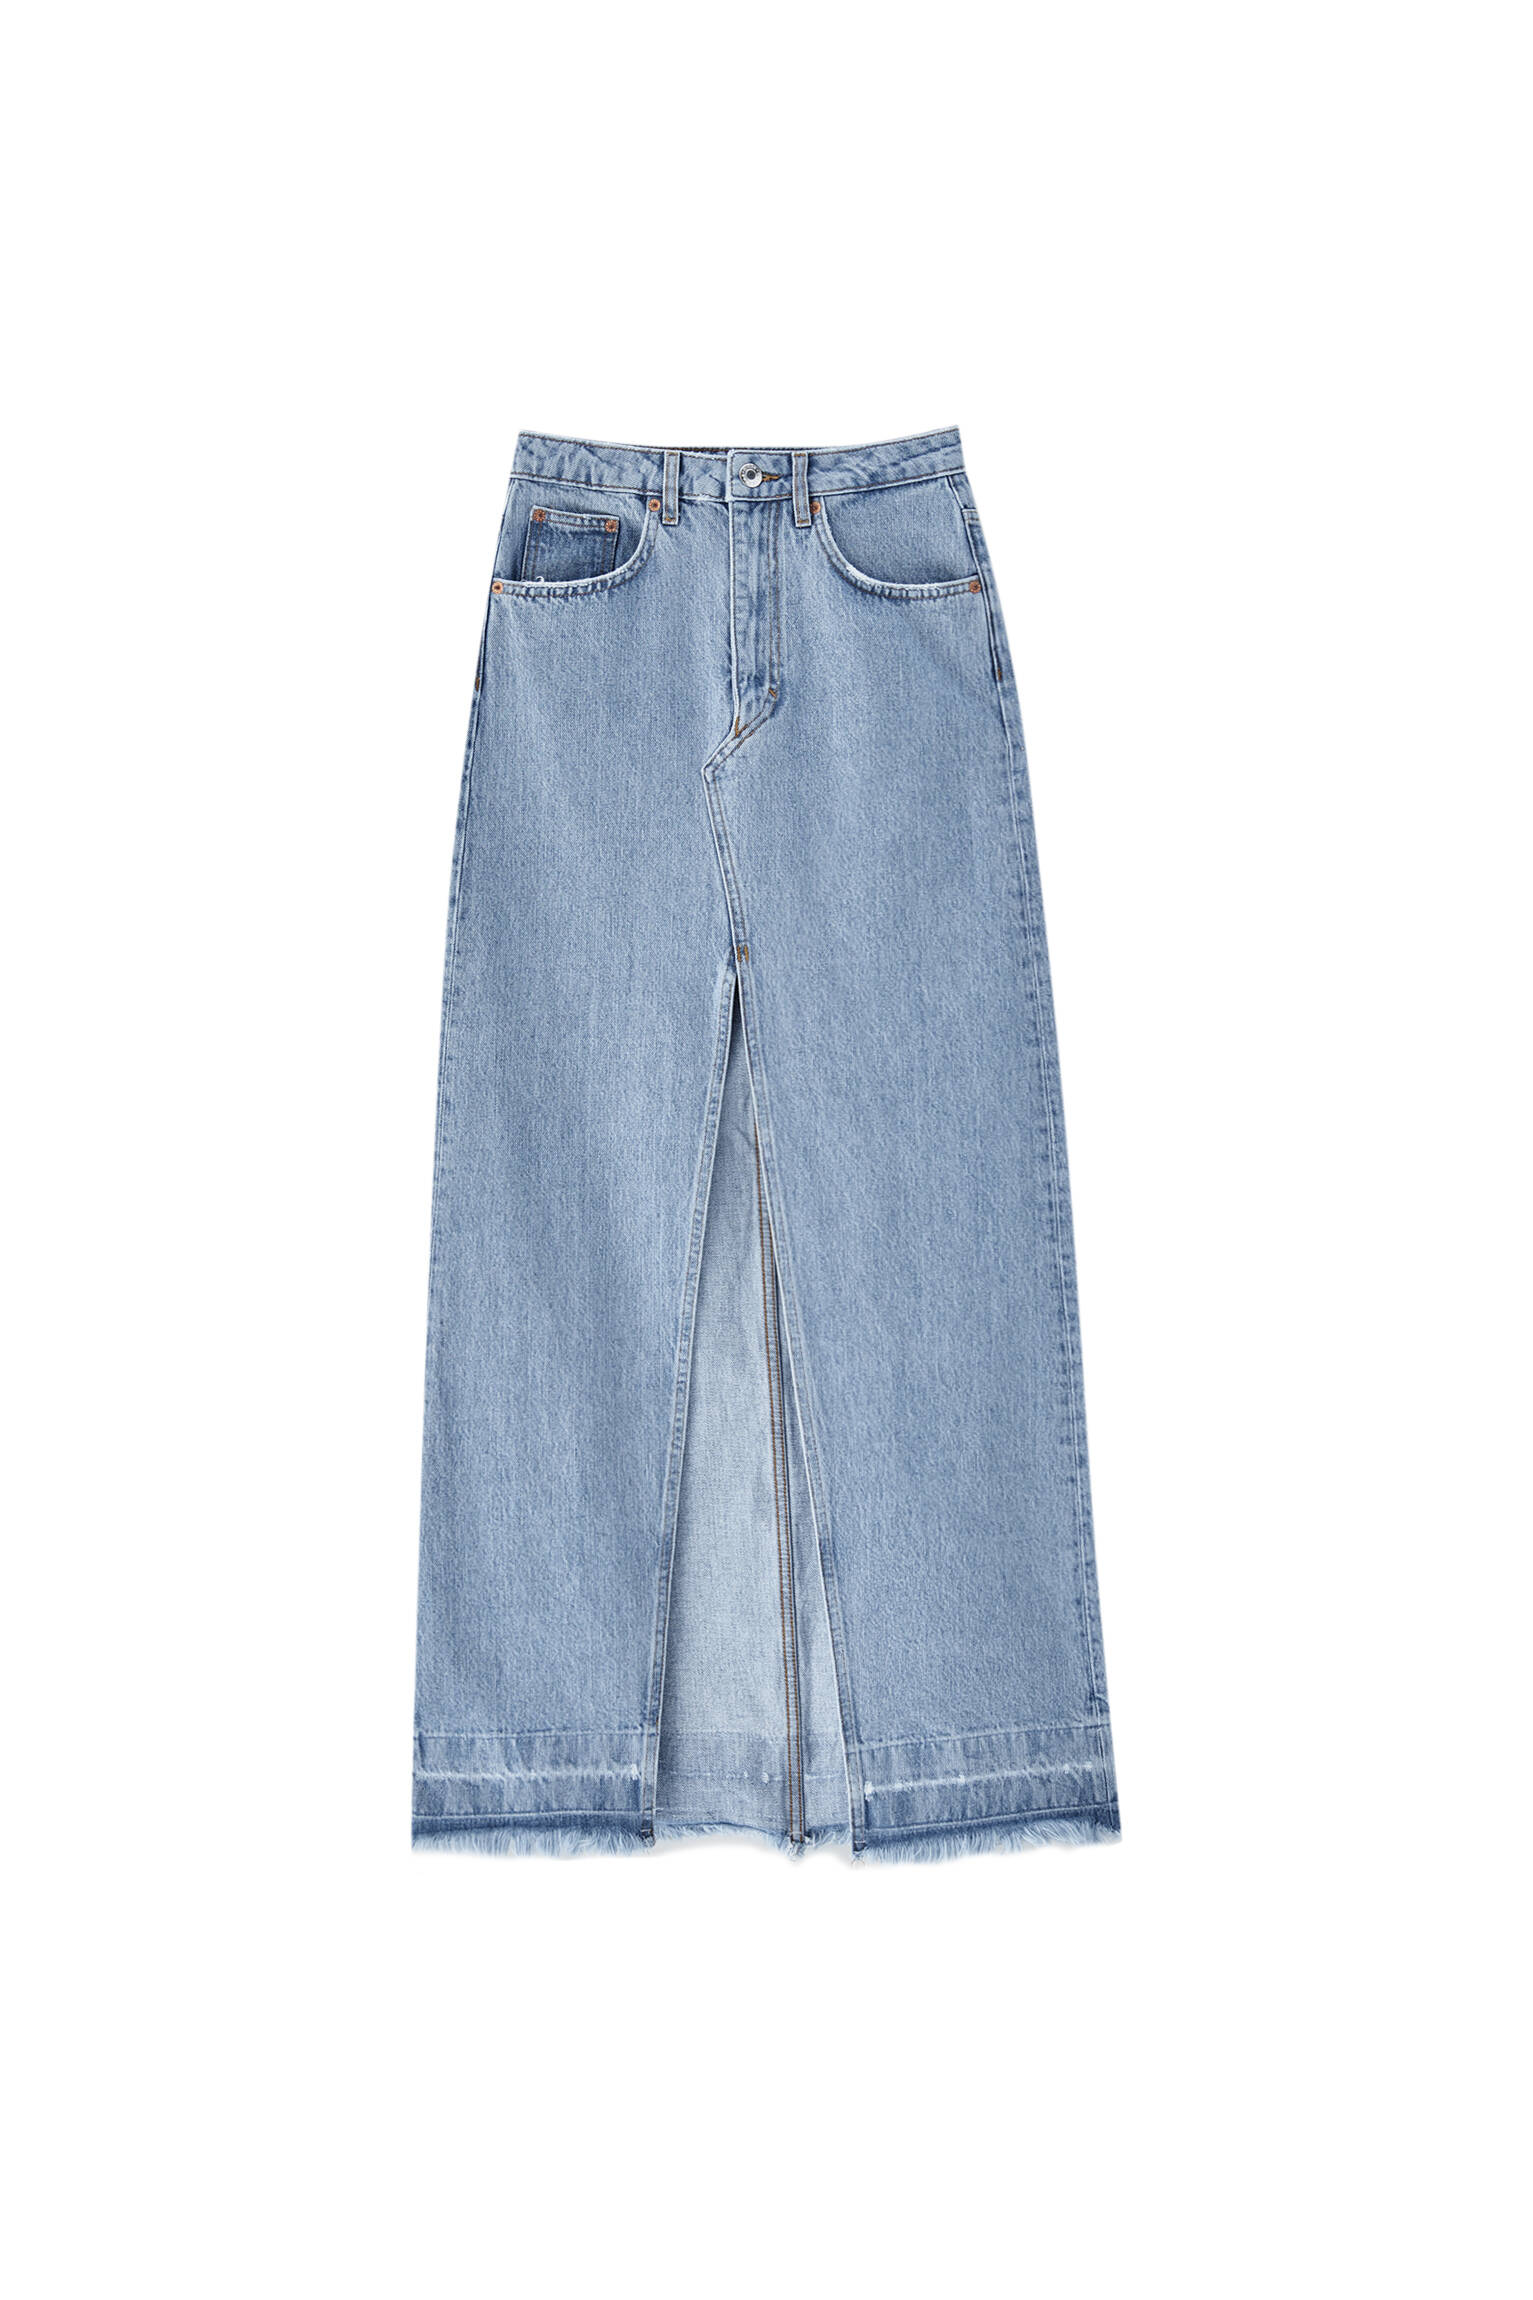 Удлиненная джинсовая юбка с разрезом спереди СИНИЙ Pull & Bear